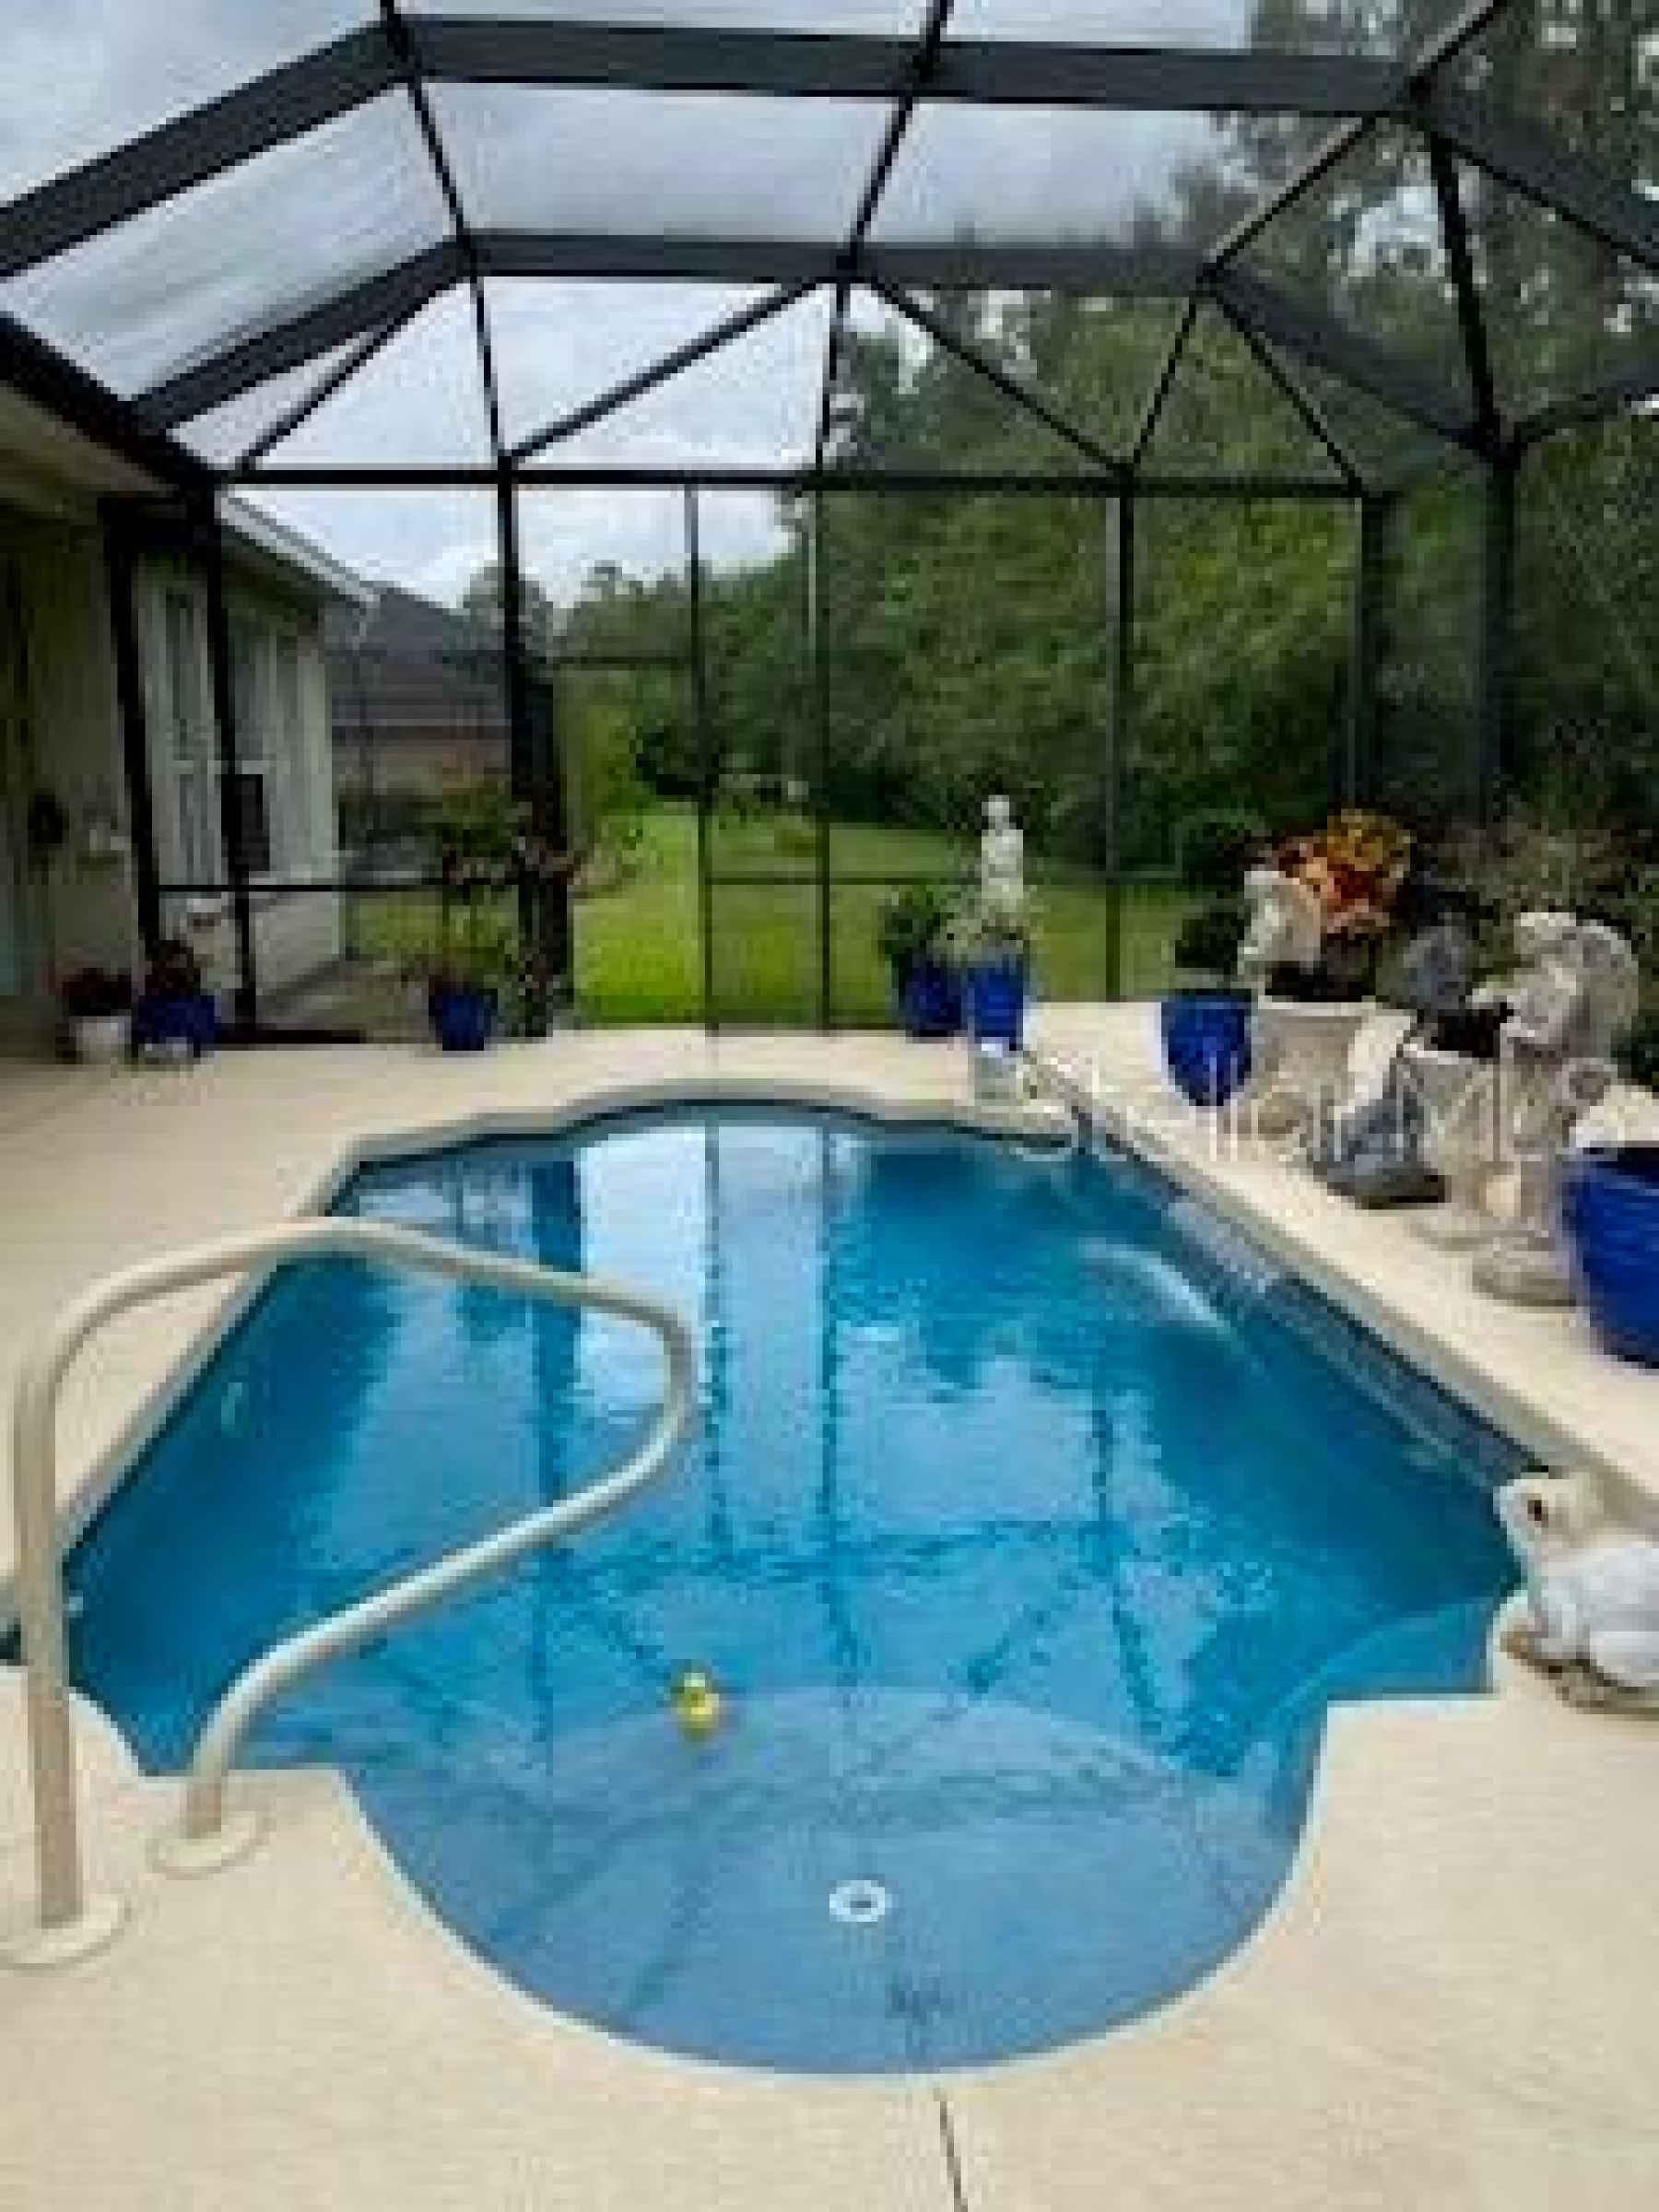 Pool/yard